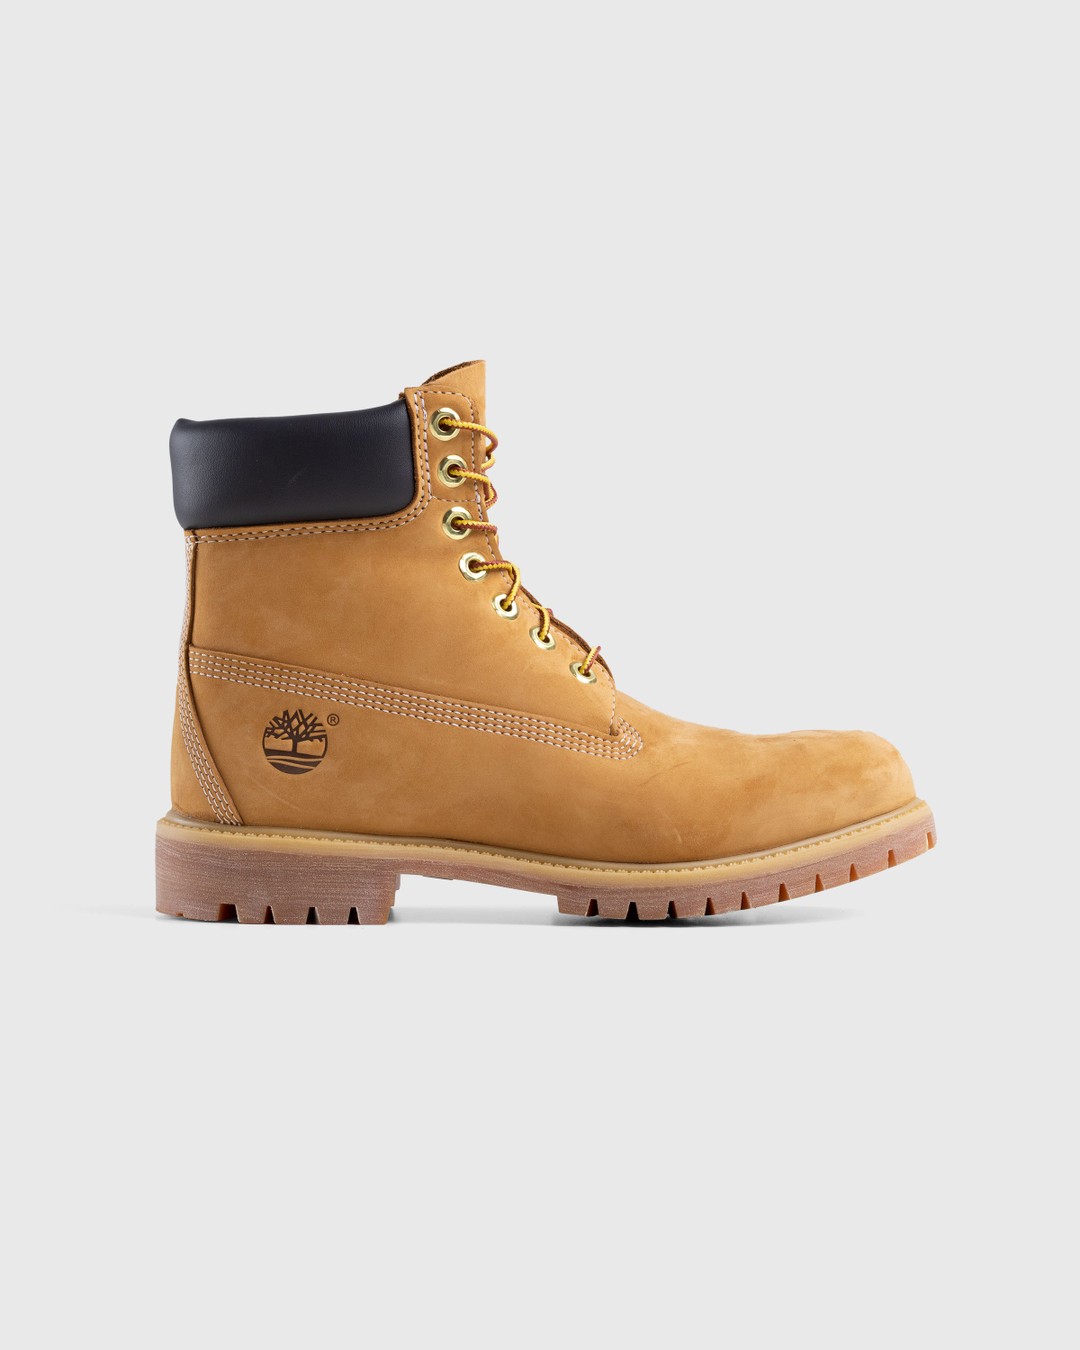 Timberland – 6 Inch Premium Boot Yellow - Boots - Yellow - Image 1